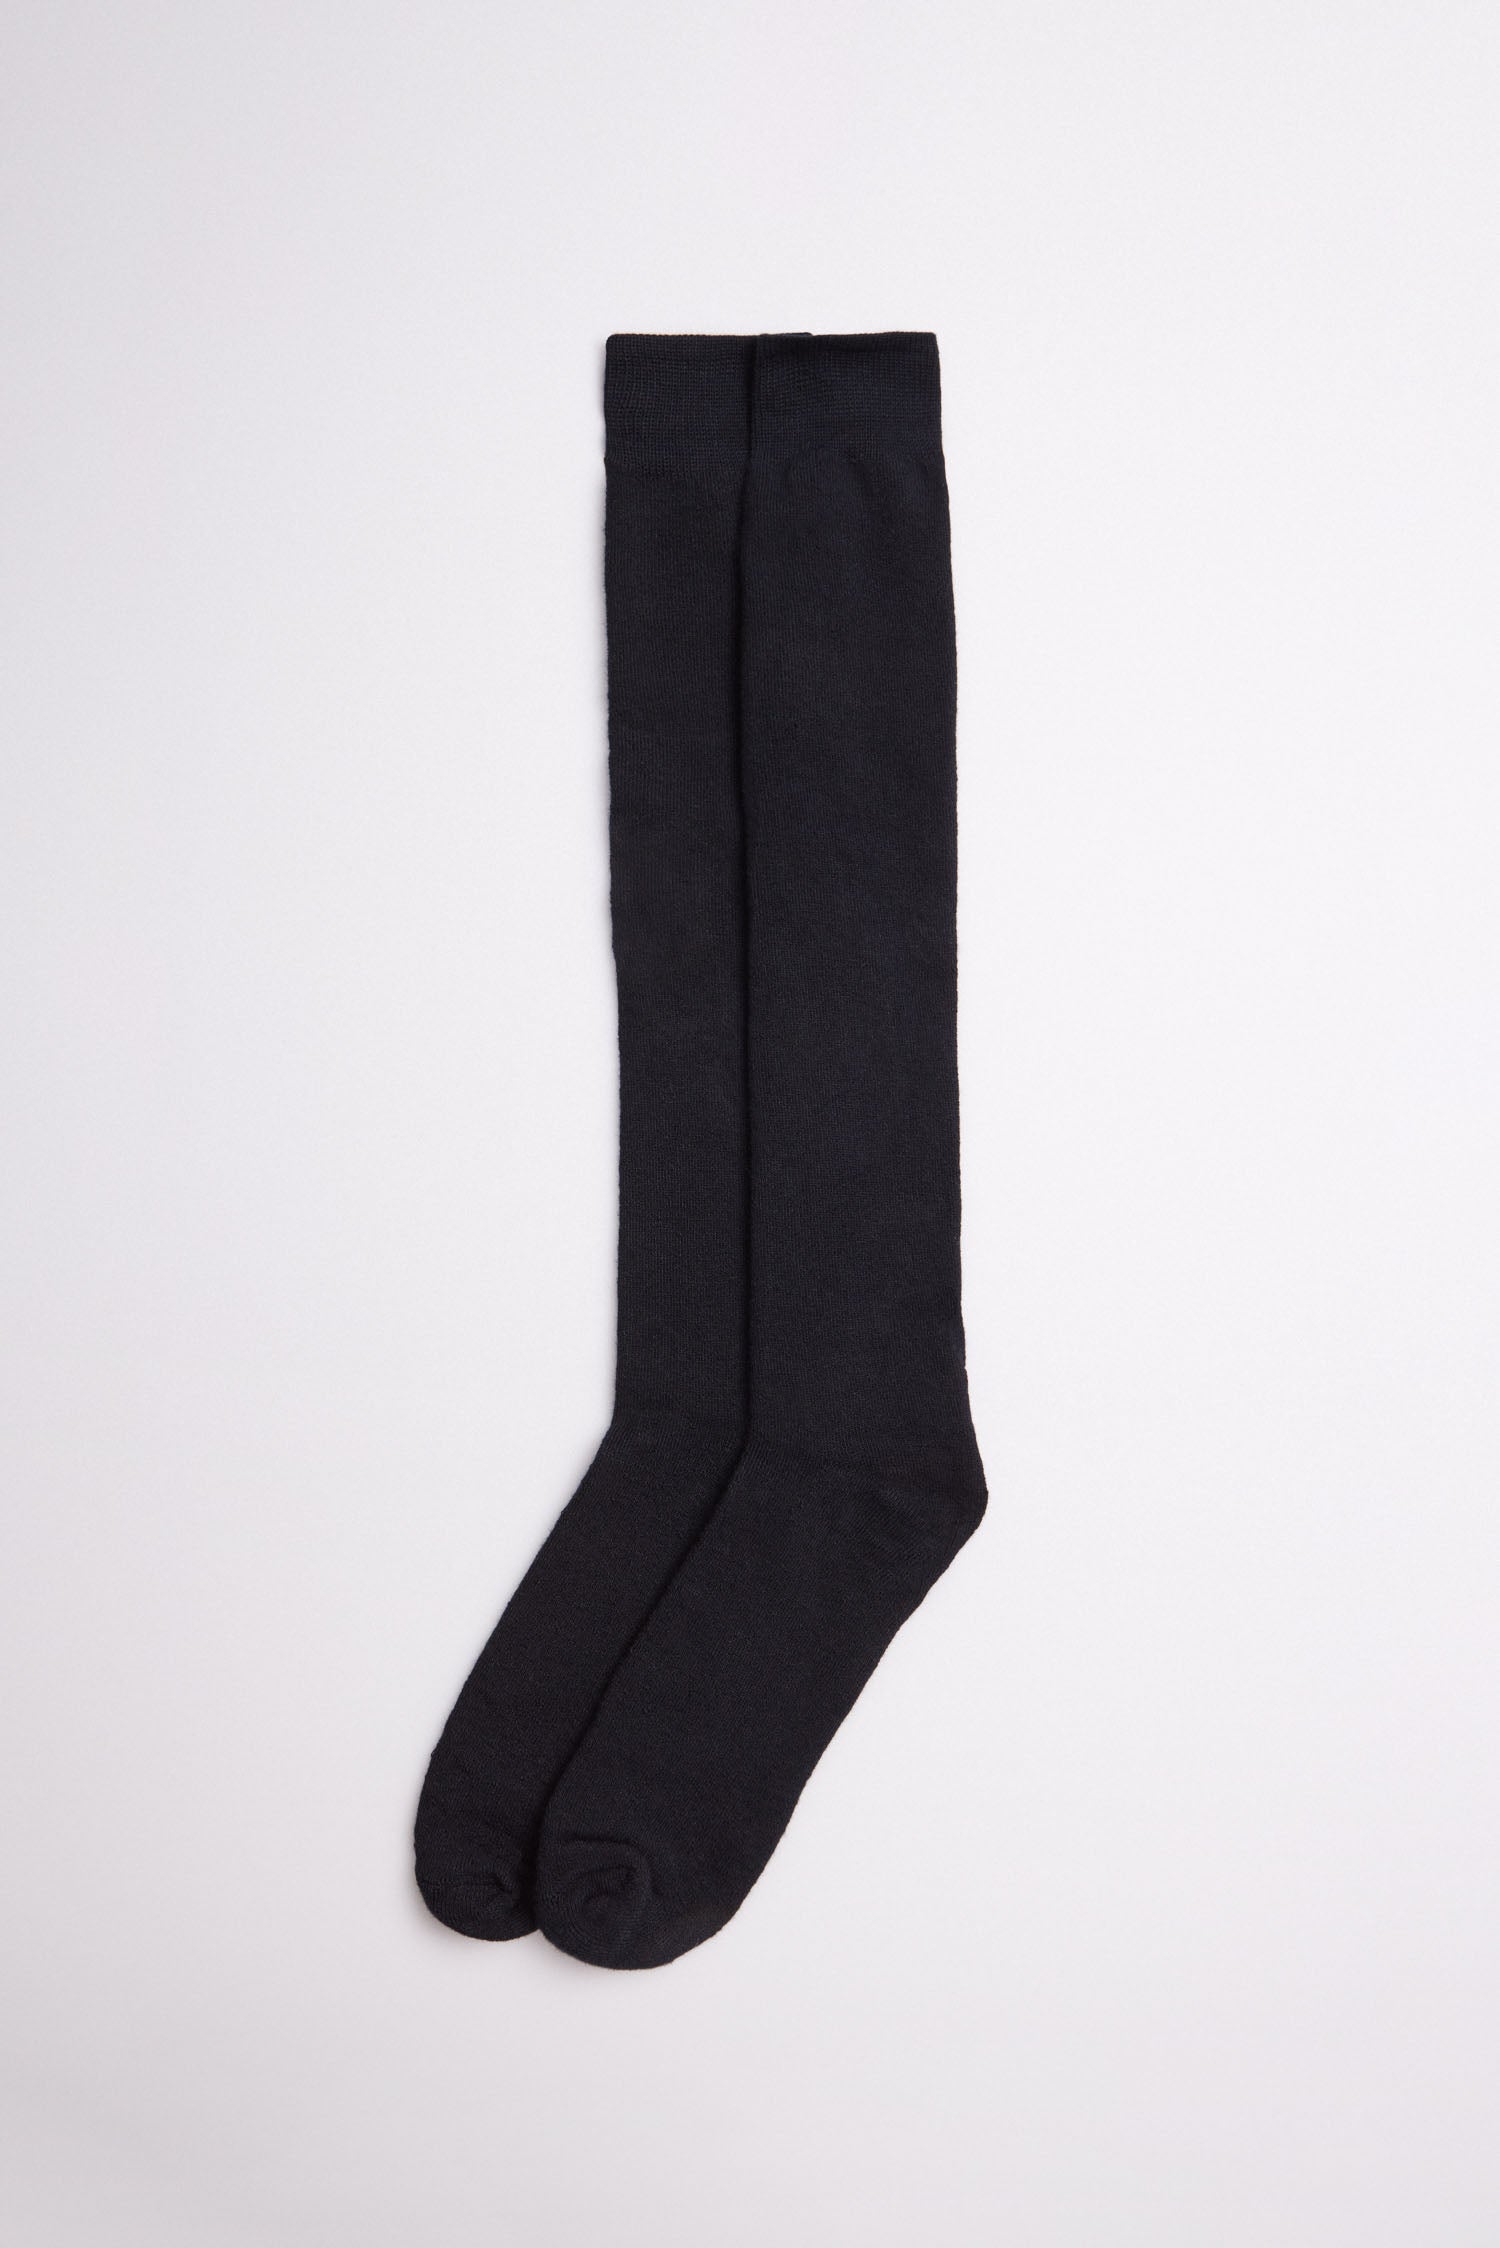 Calcetines hombre térmicos Negros - Textiles Gomera